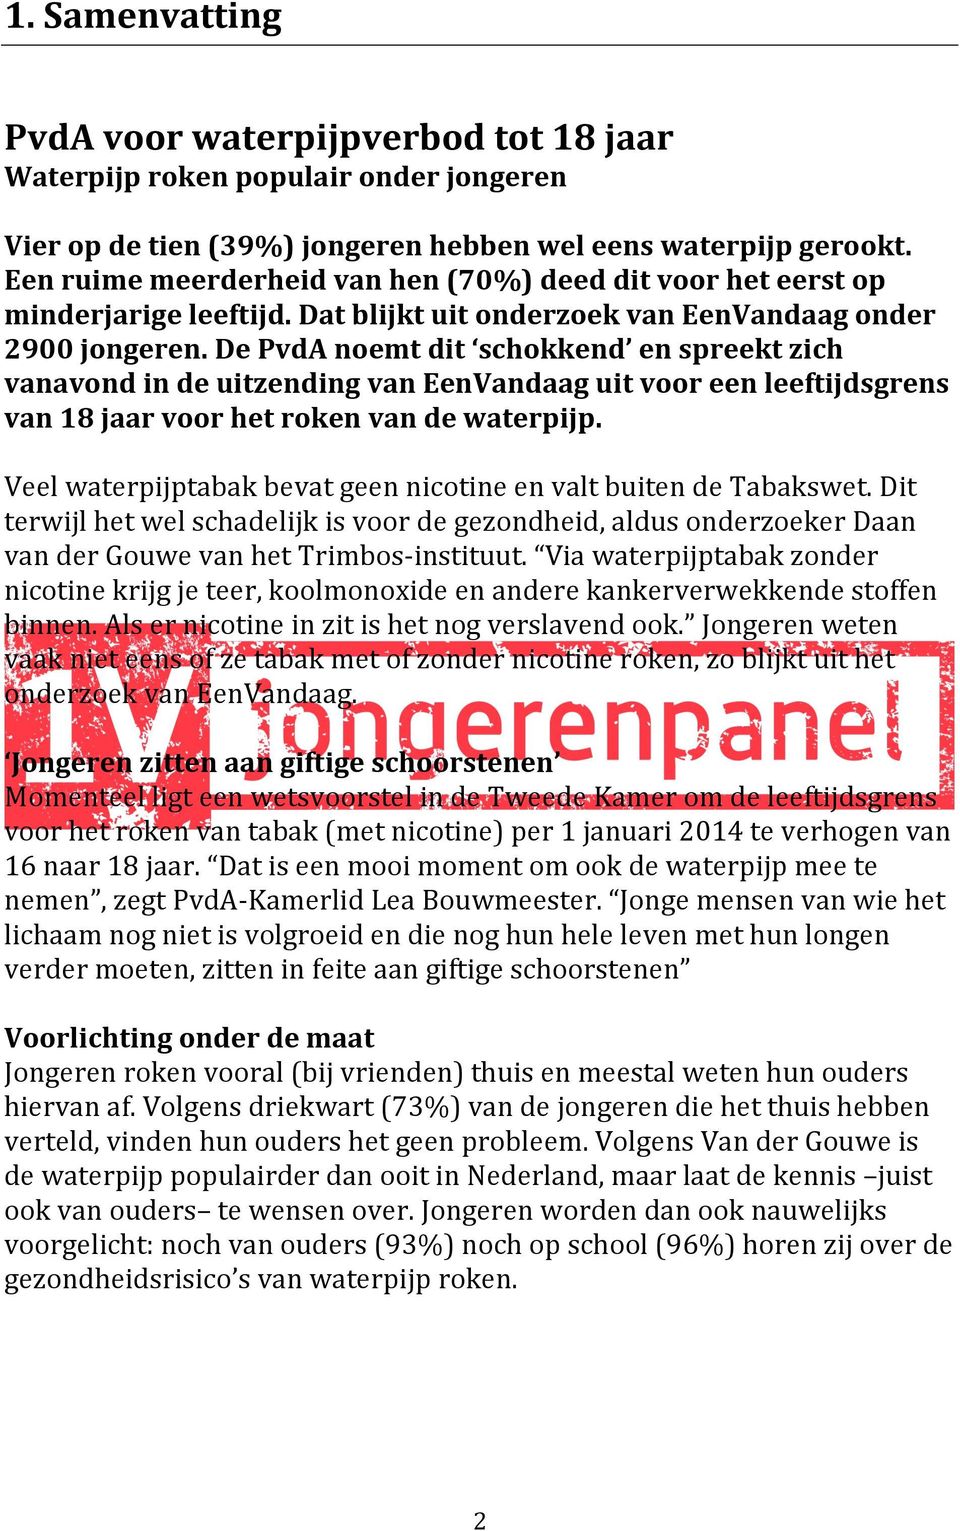 De PvdA noemt dit schokkend en spreekt zich vanavond in de uitzending van EenVandaag uit voor een leeftijdsgrens van 18 jaar voor het roken van de waterpijp.